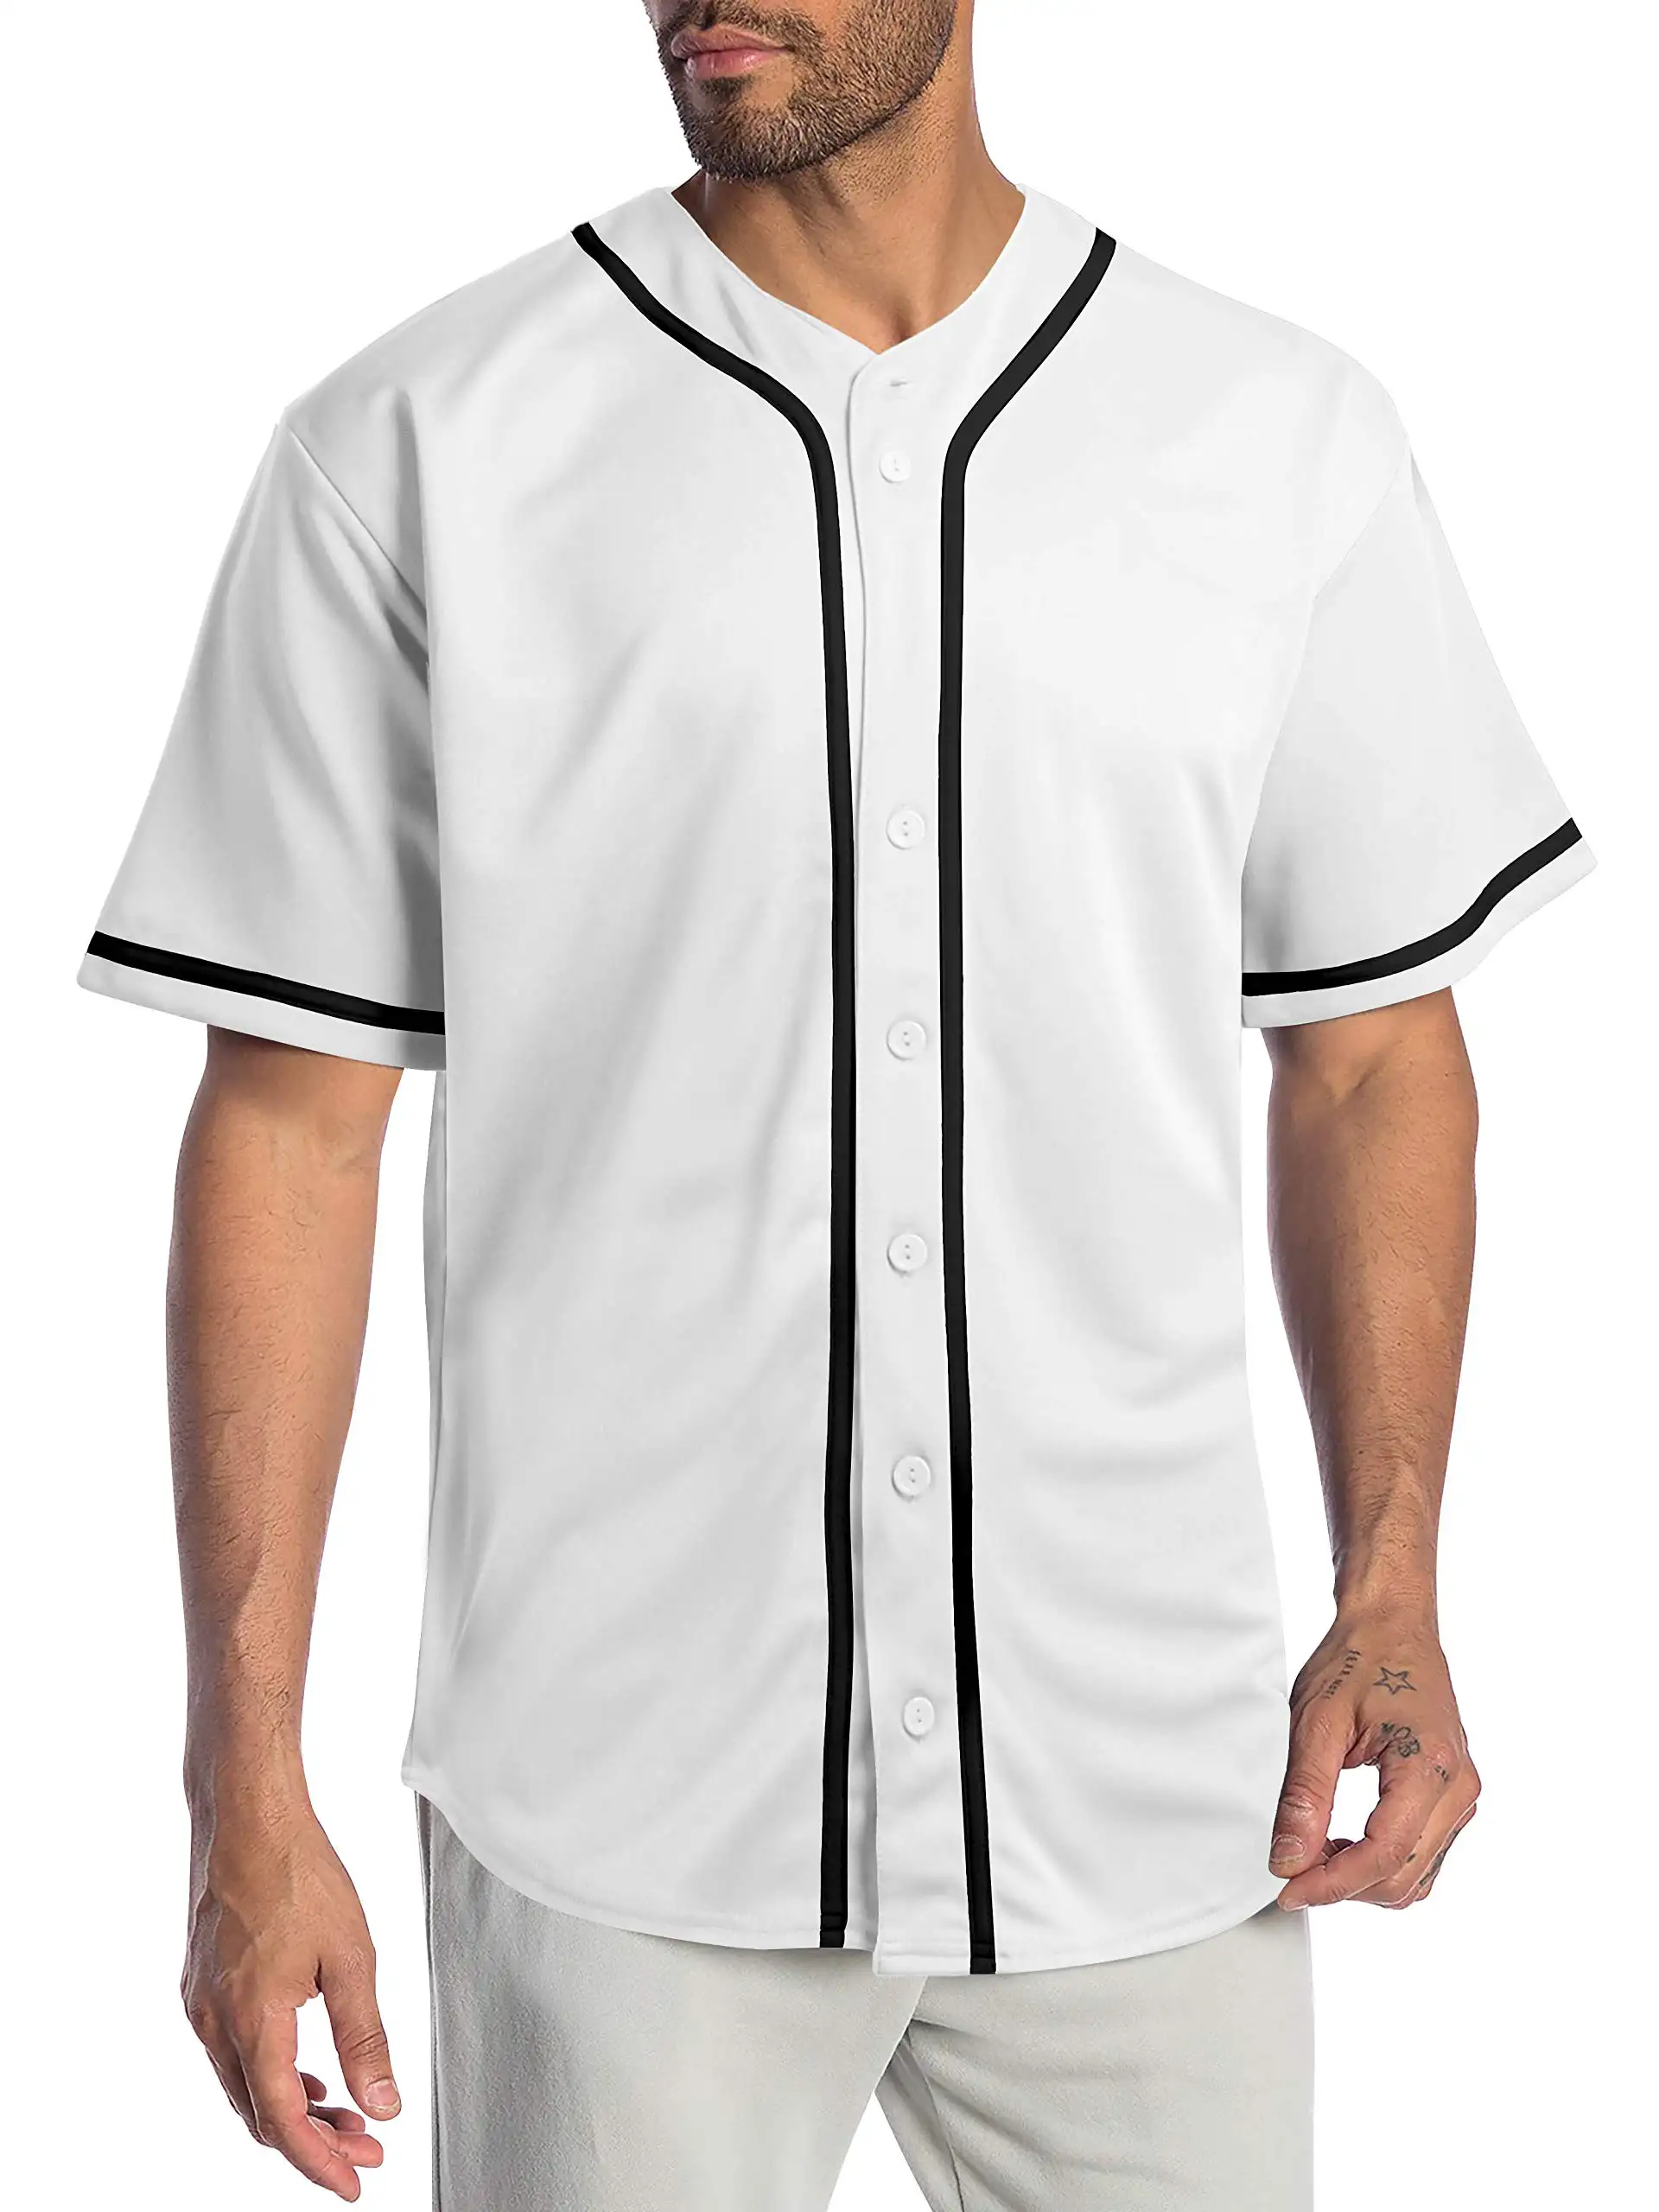 Camisas de beisebol esportivas com estampa de número e logotipo sublimado personalizado para homens e mulheres, roupas uniformes de beisebol